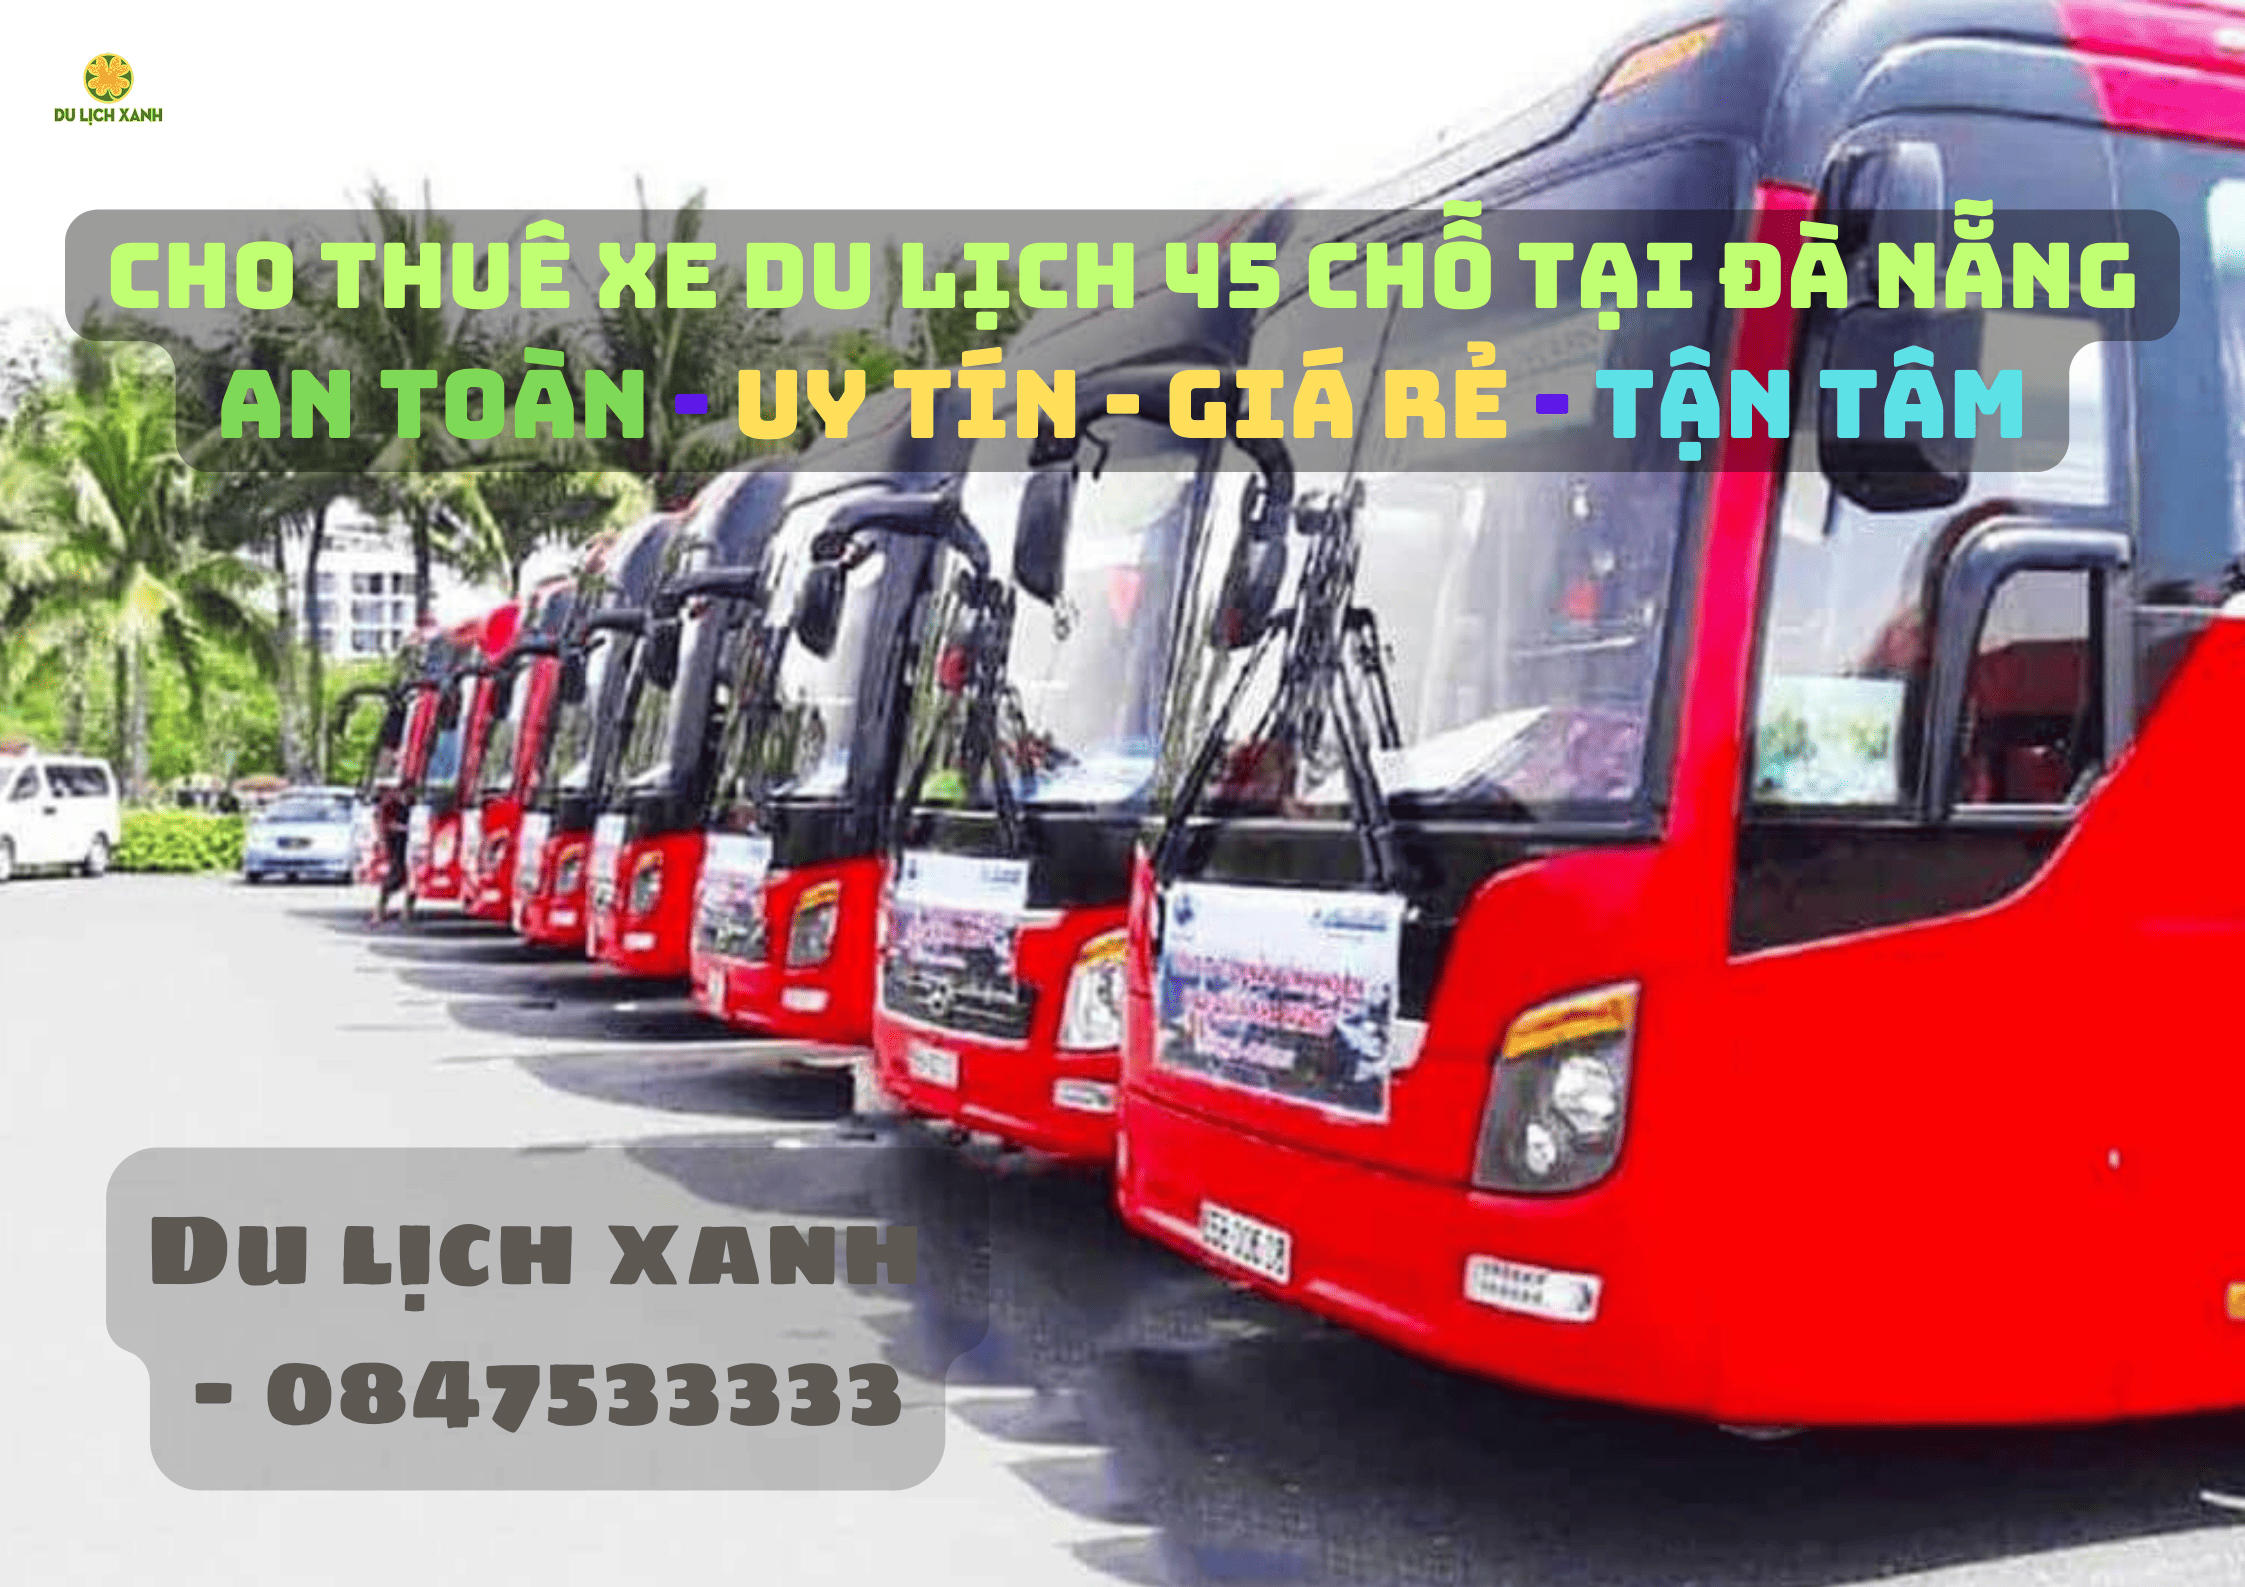 Cho thuê xe du lịch 45 chỗ tại Đà Nẵng